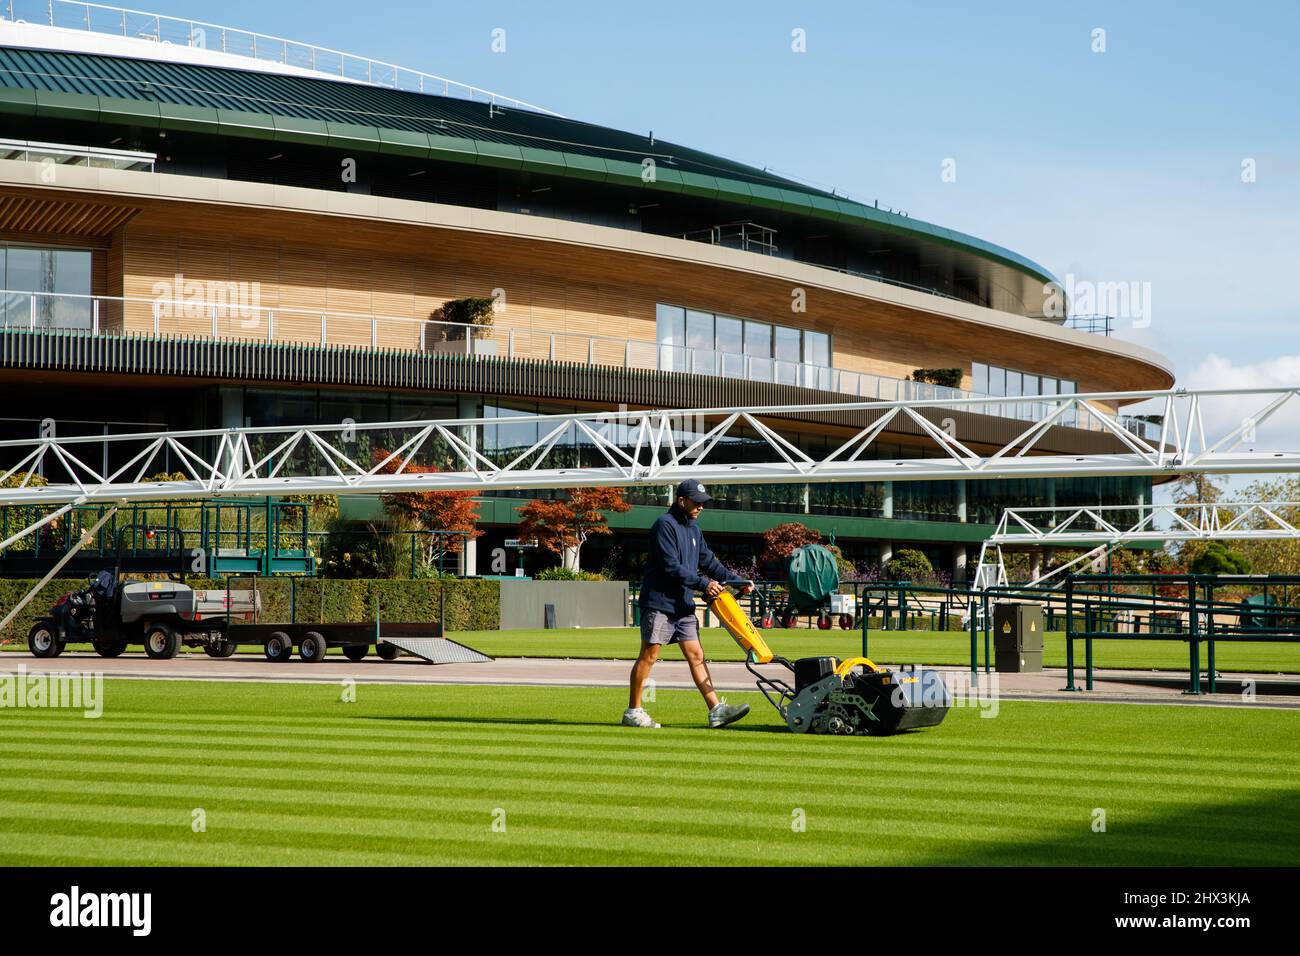 Groundman corta el césped frente a la Corte No.1 en el All England Lawn Tennis Club, sede de los Campeonatos de Wimbledon Foto de stock